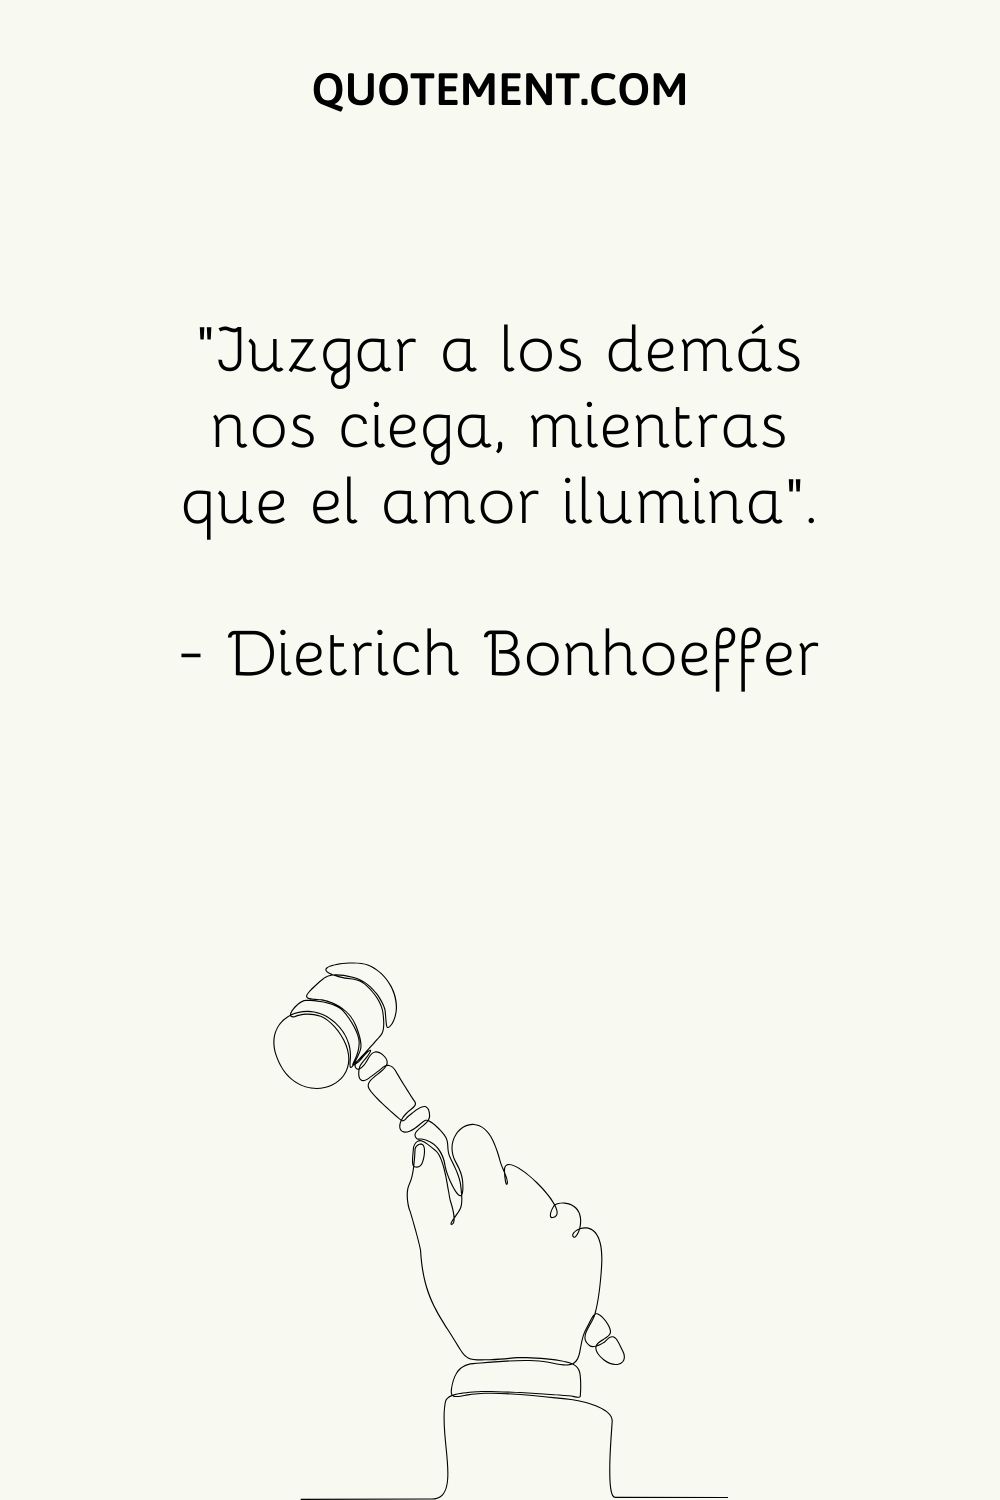 "Juzgar a los demás nos ciega, mientras que el amor nos ilumina". - Dietrich Bonhoeffer